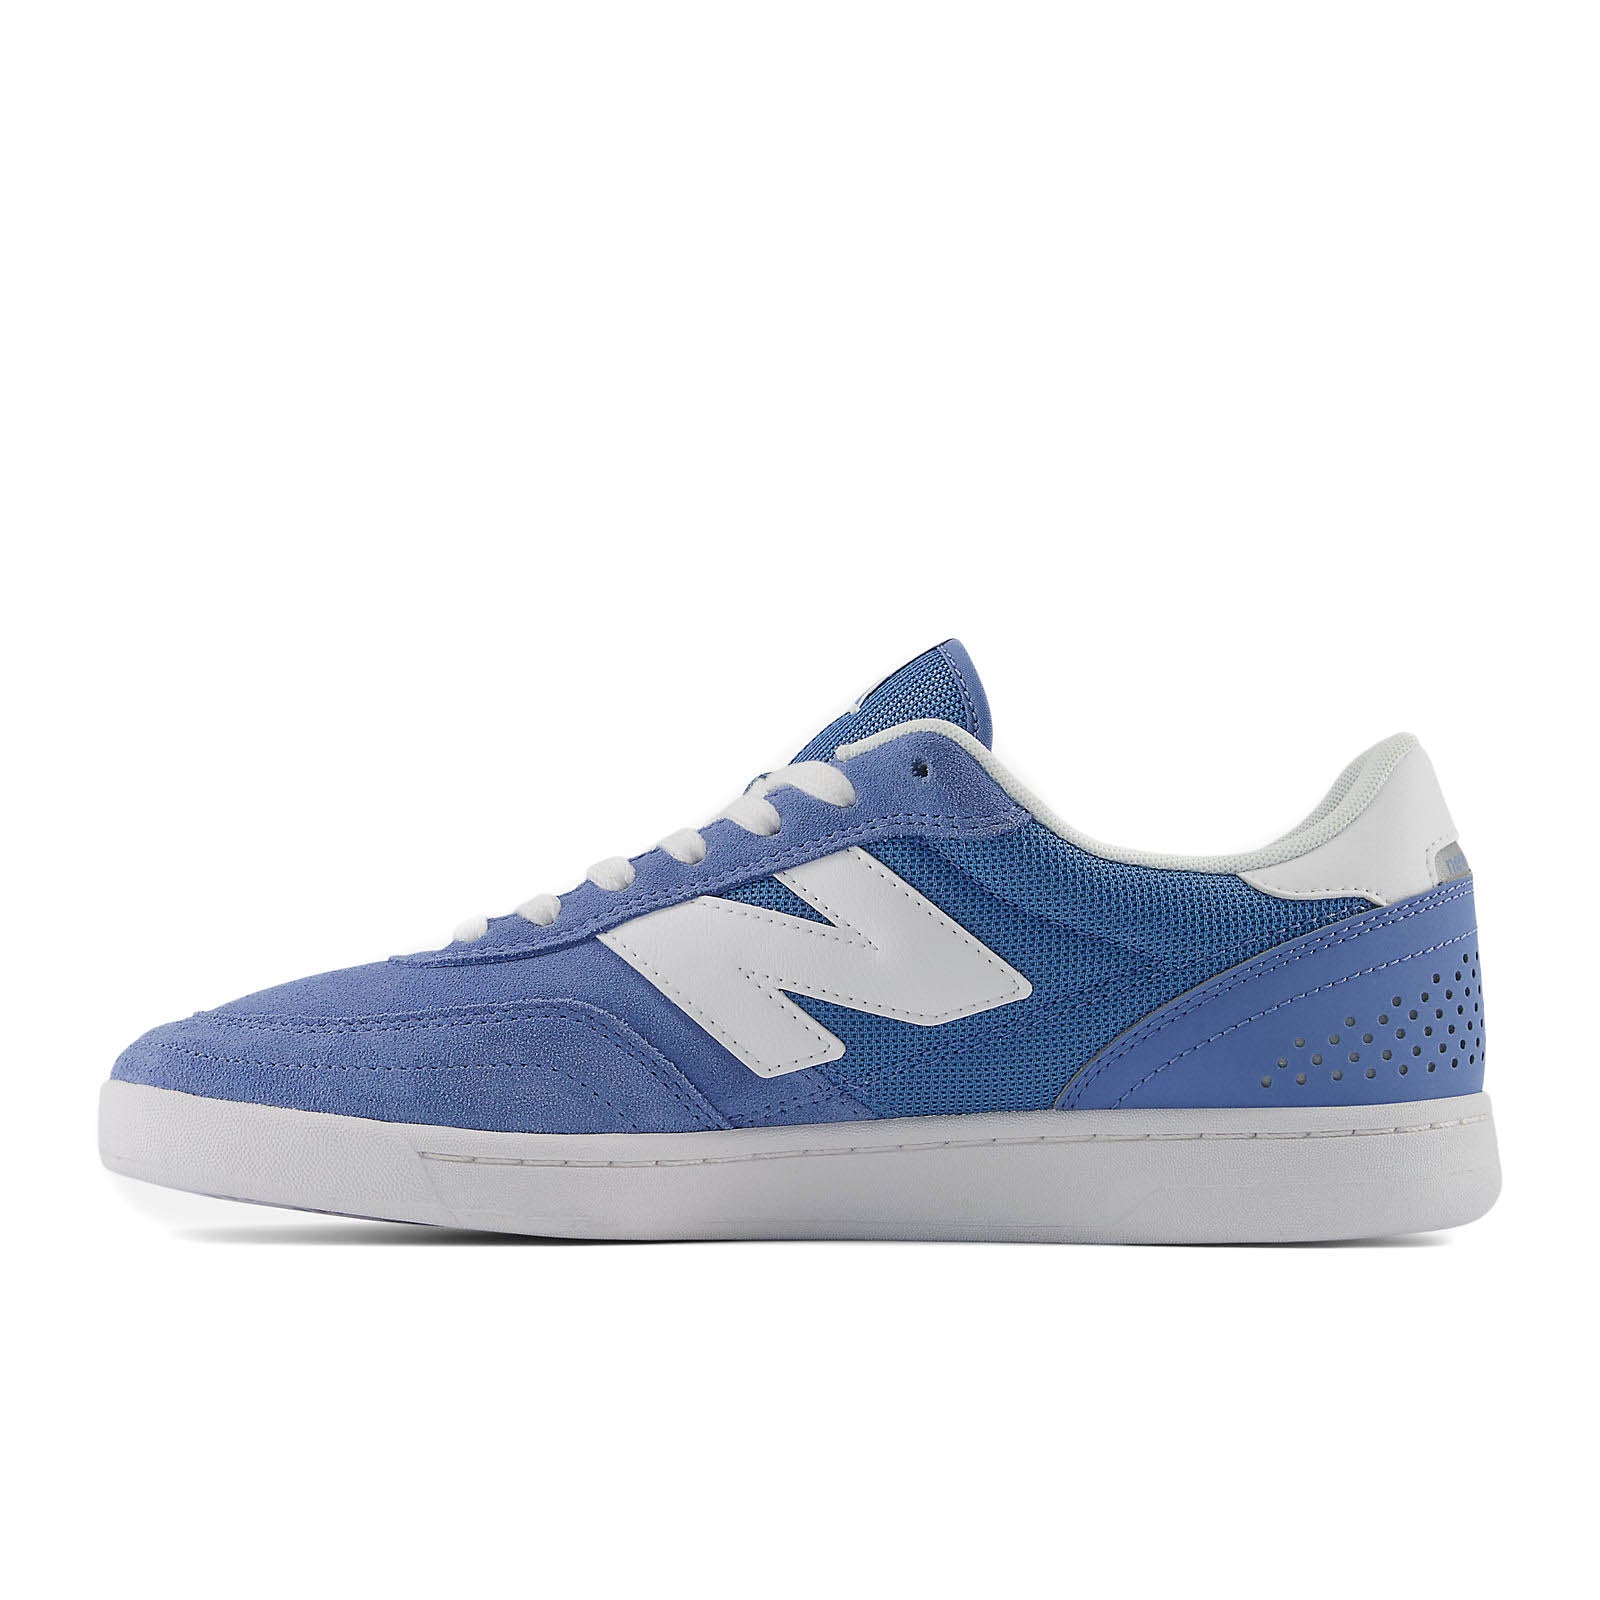 NB Numeric 440 V2 - Blue